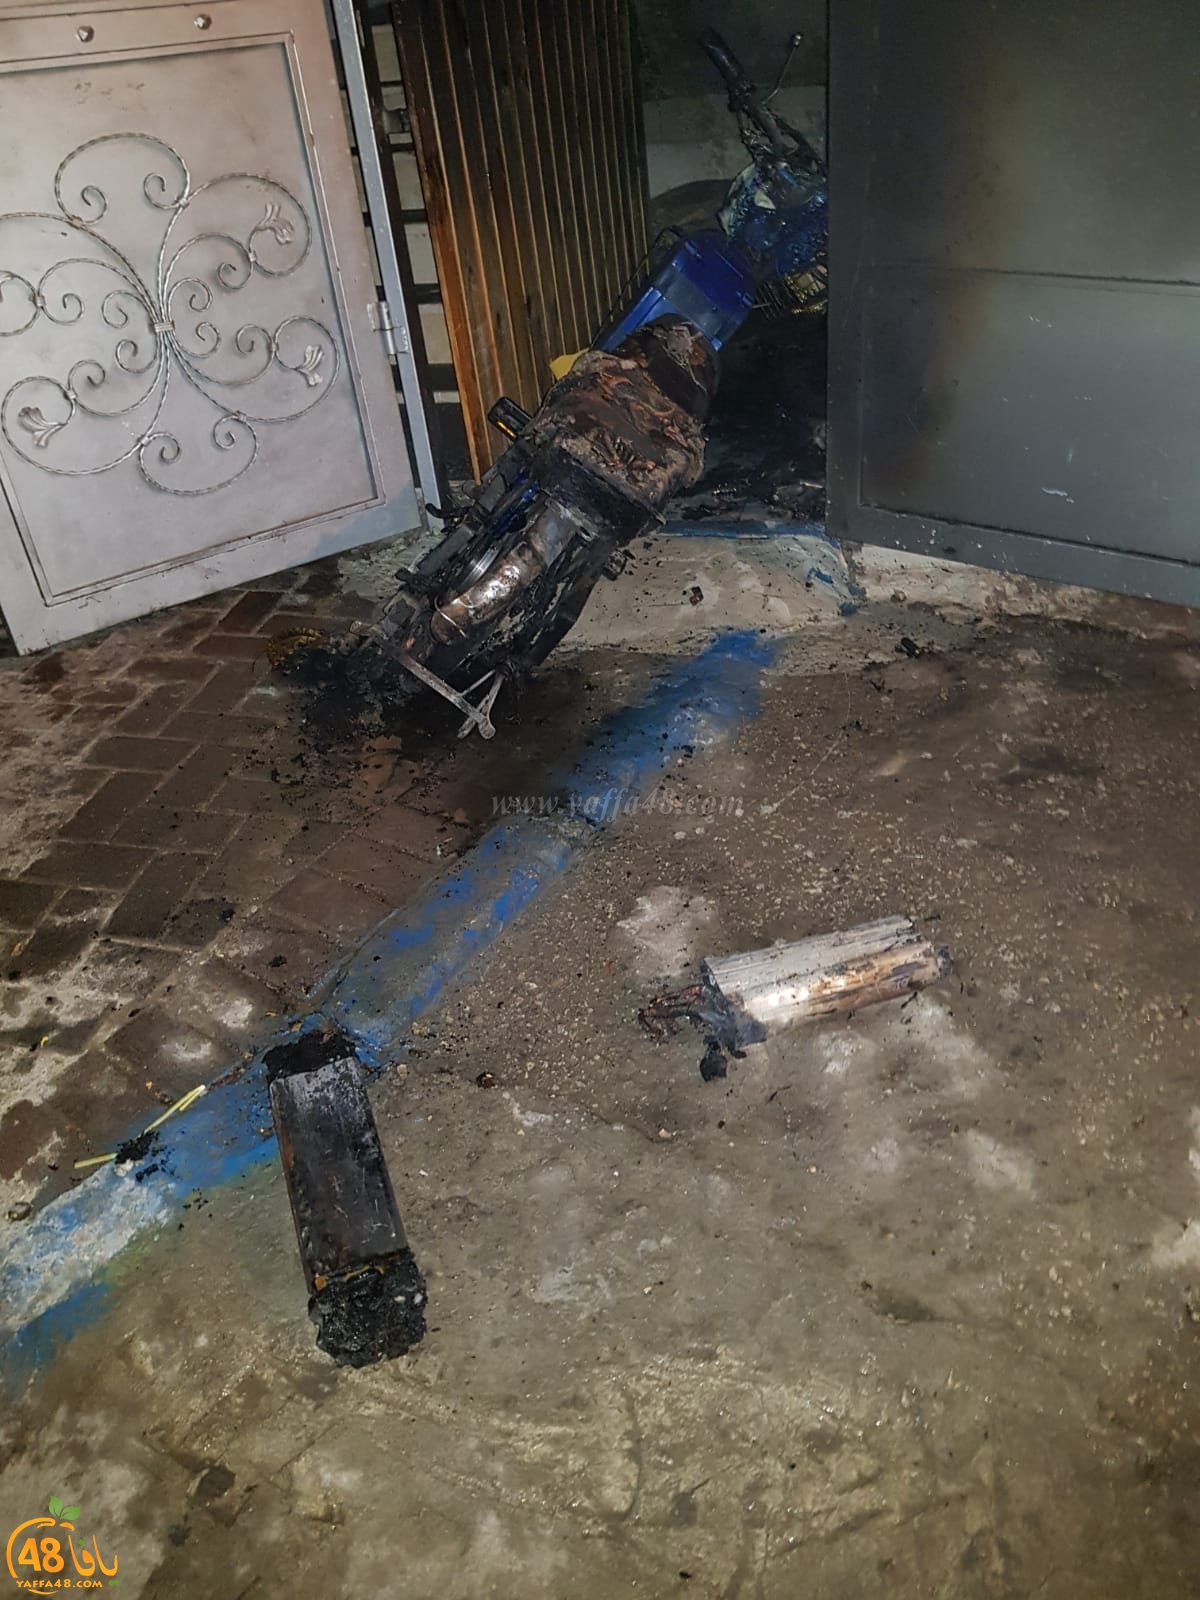  الرملة: احتراق منزل في حي الجواريش بسبب احتراق بطاريات دراجة كهربائية